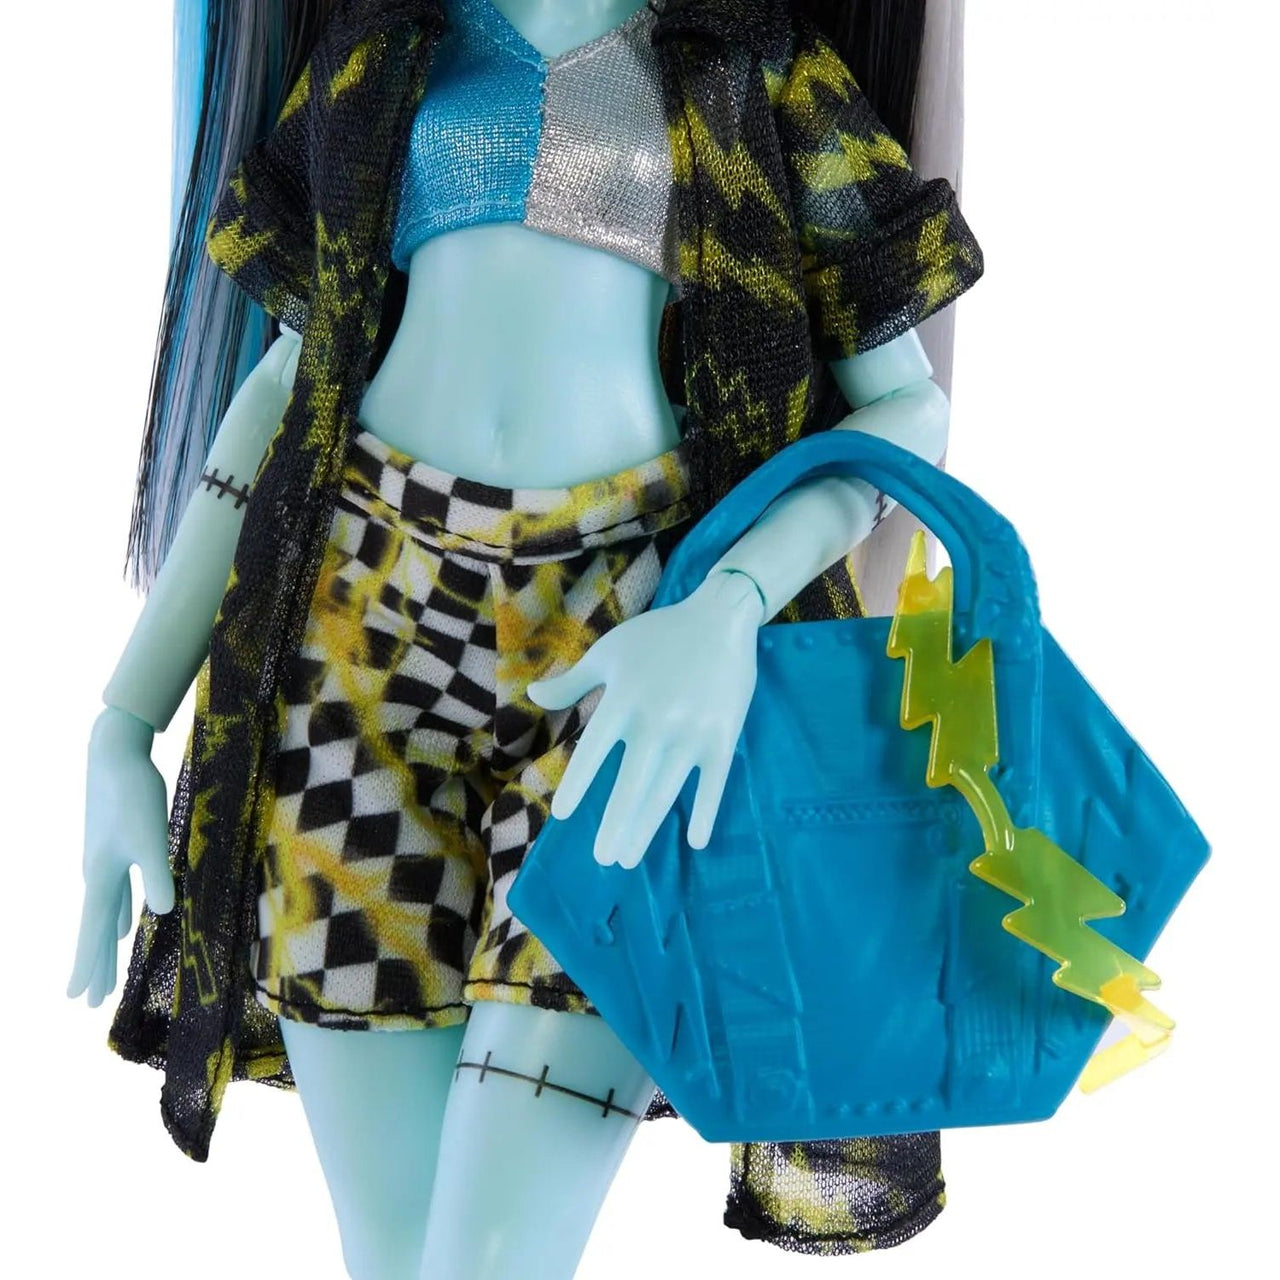 Monster High Scare-adise Island Frankie Stein Doll Monster High